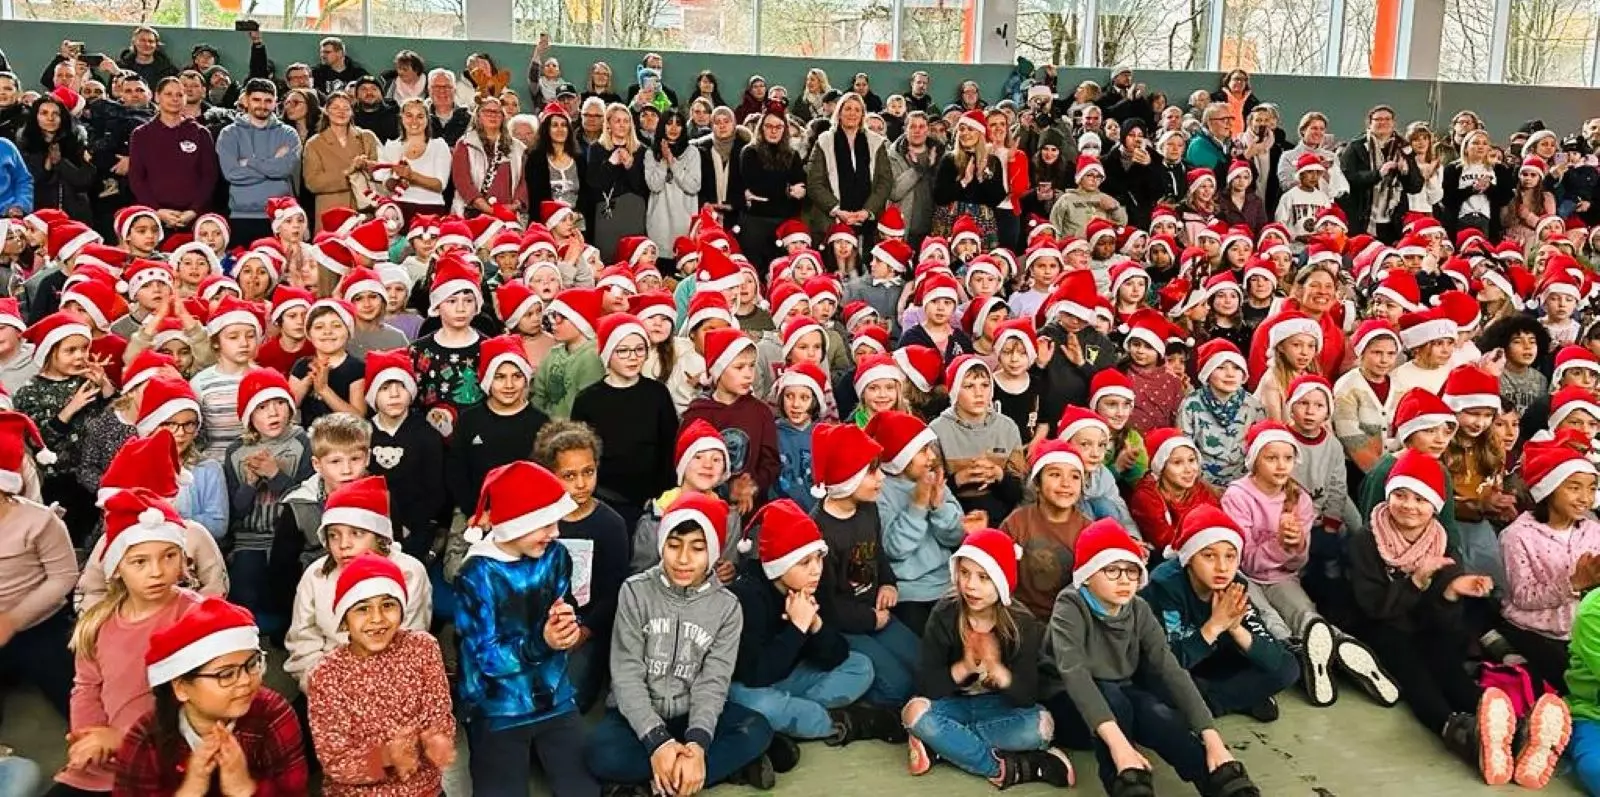 650 kleine Weihnachtsmänner versammelten sich zum Singen in der Sporthalle. Foto: privat